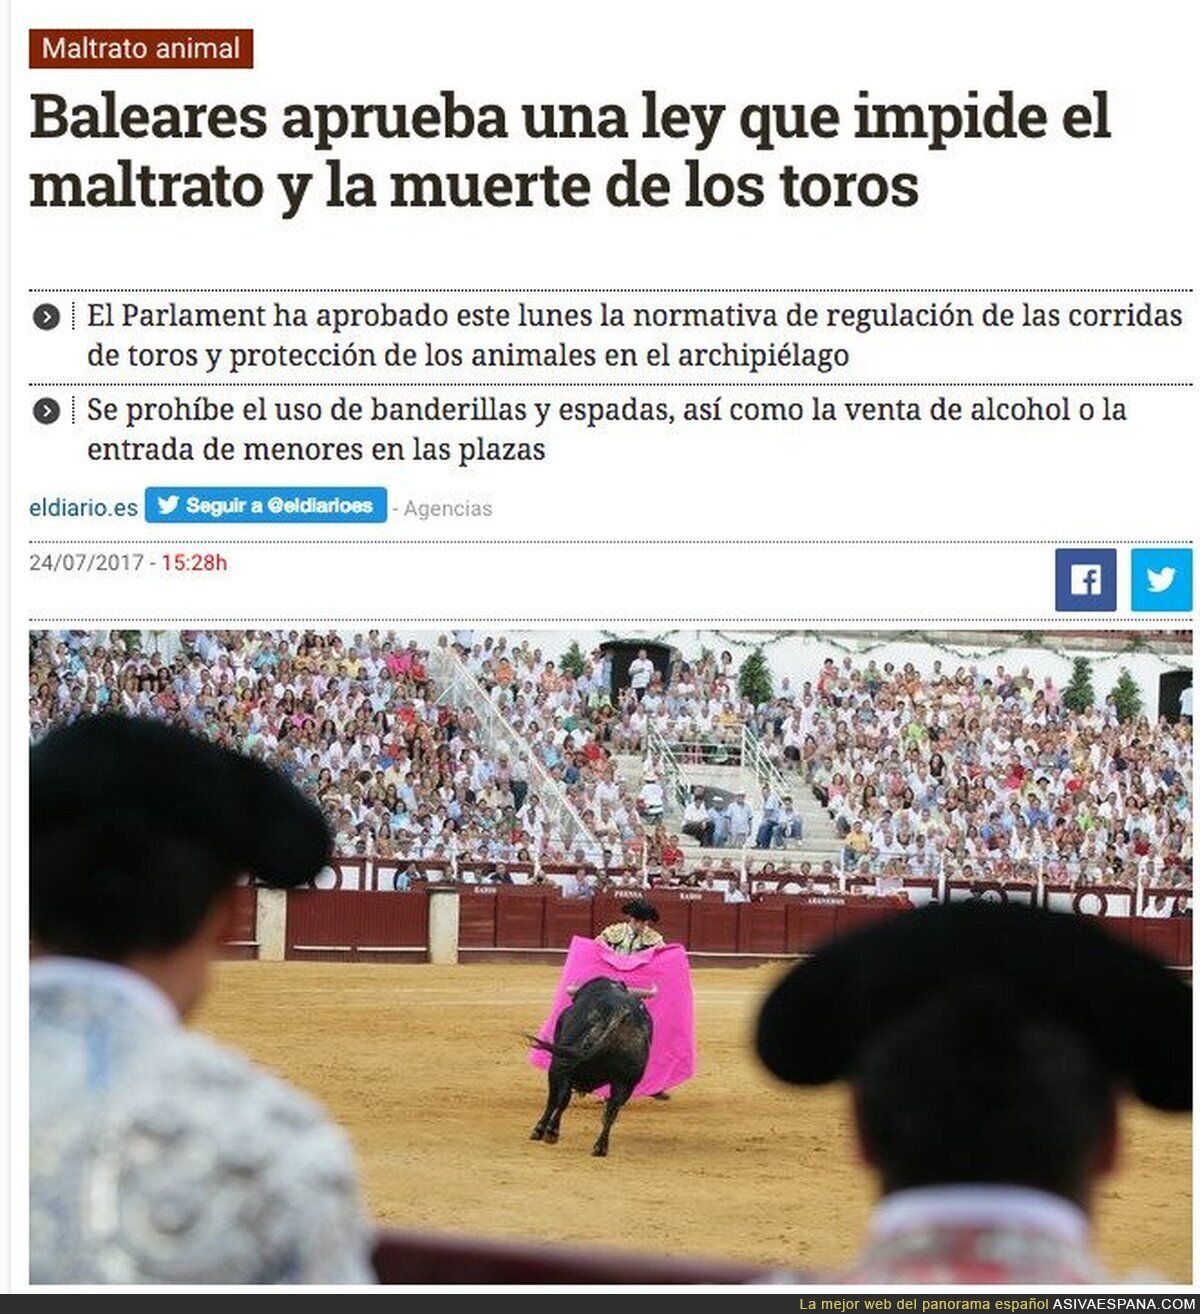 ÚLTIMA HORA: Se acabó la muerte y maltrato a los toros en las Islas Baleares